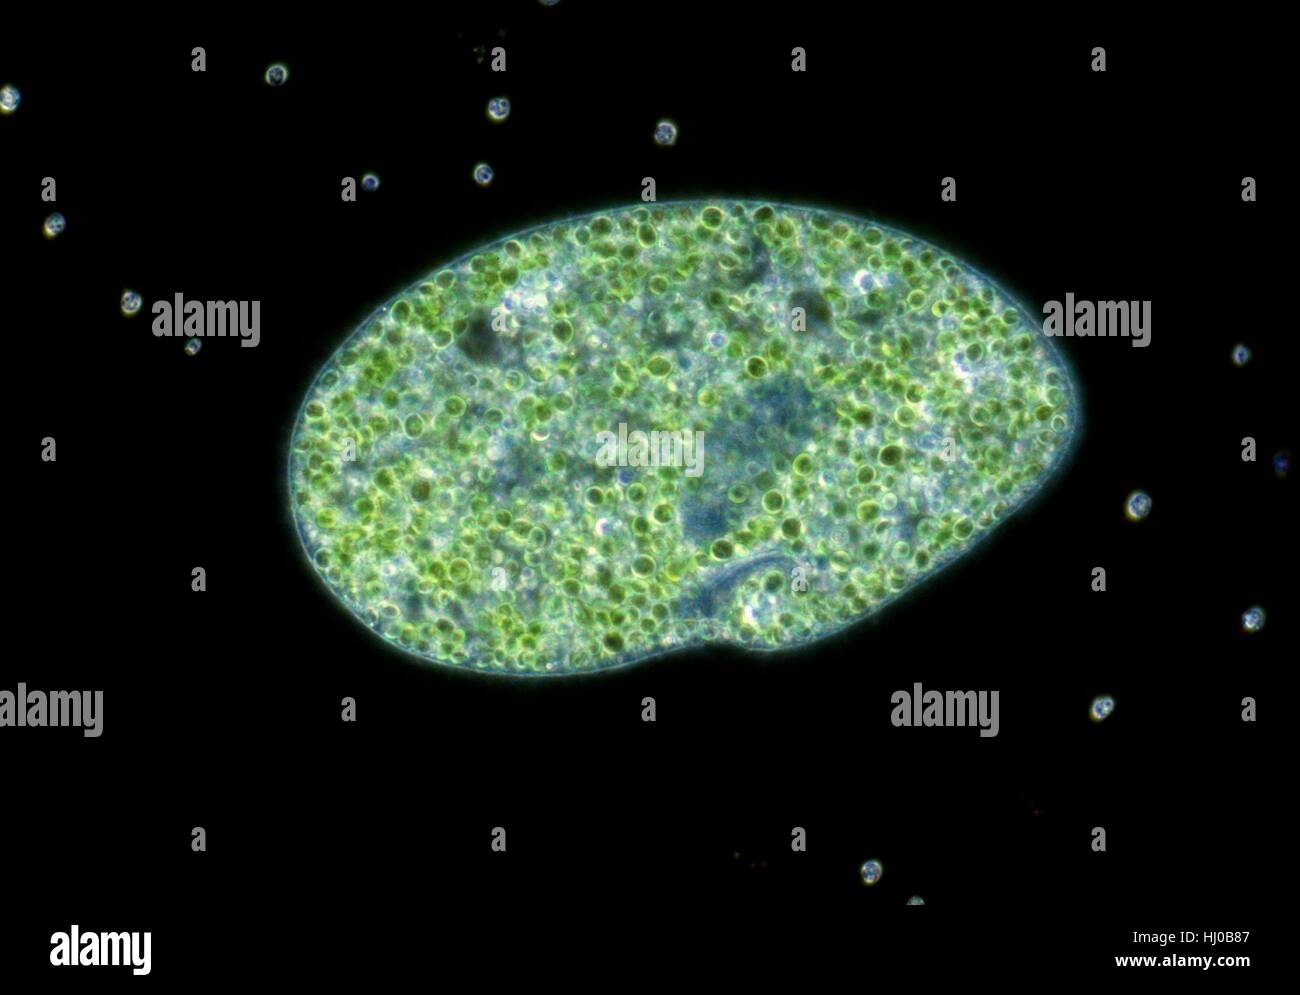 Dunkelfeld leichte Schliffbild von Paramecium Bursaria, ein ciliate Protozoen, die endosymbiontische grüne Algen (Chlorella sp.) enthält. Paramecium findet man hauptsächlich in stagnierenden Teiche, ernähren sich von Bakterien Pflanze Partikel. Sie haben ständige Mund oral Hain genannt. Nahrung, die über die mündlichen Nut aufgenommen verdaut Stockfoto